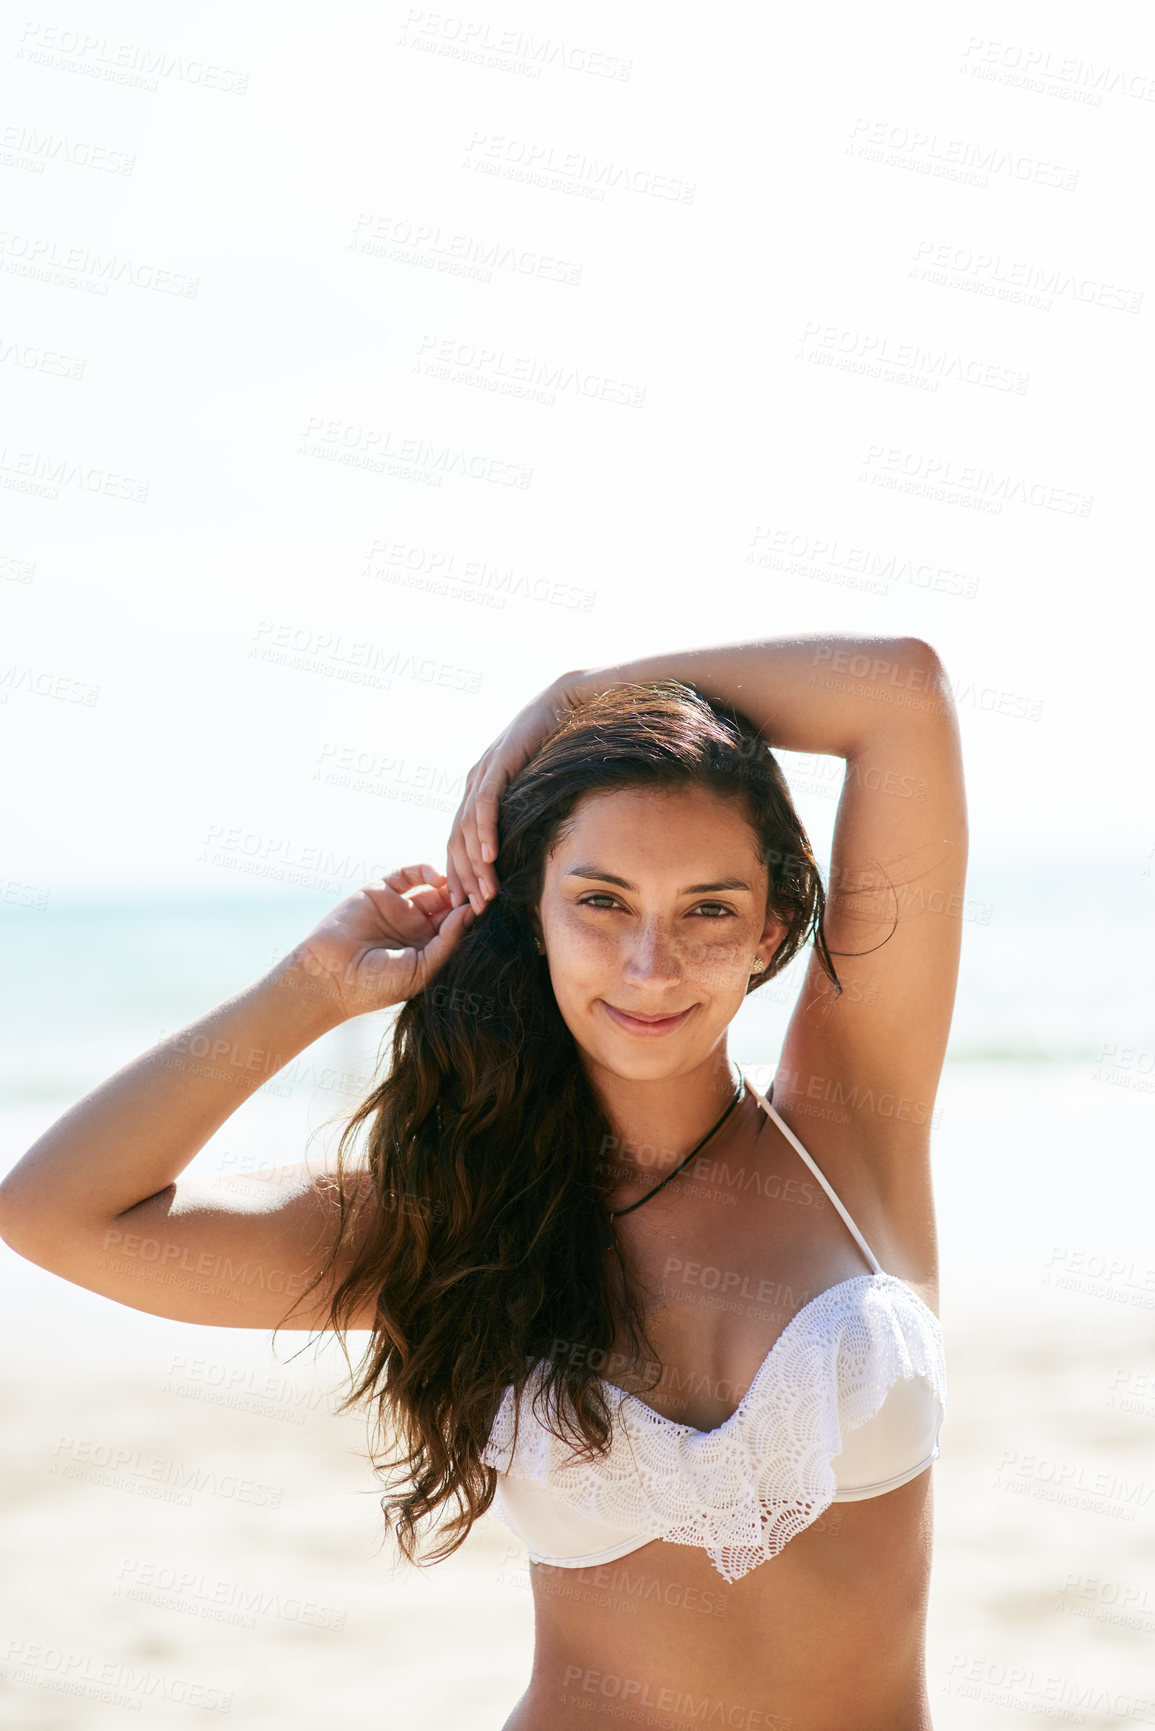 Buy stock photo Closeup shot of a beautiful young woman posing on the beach